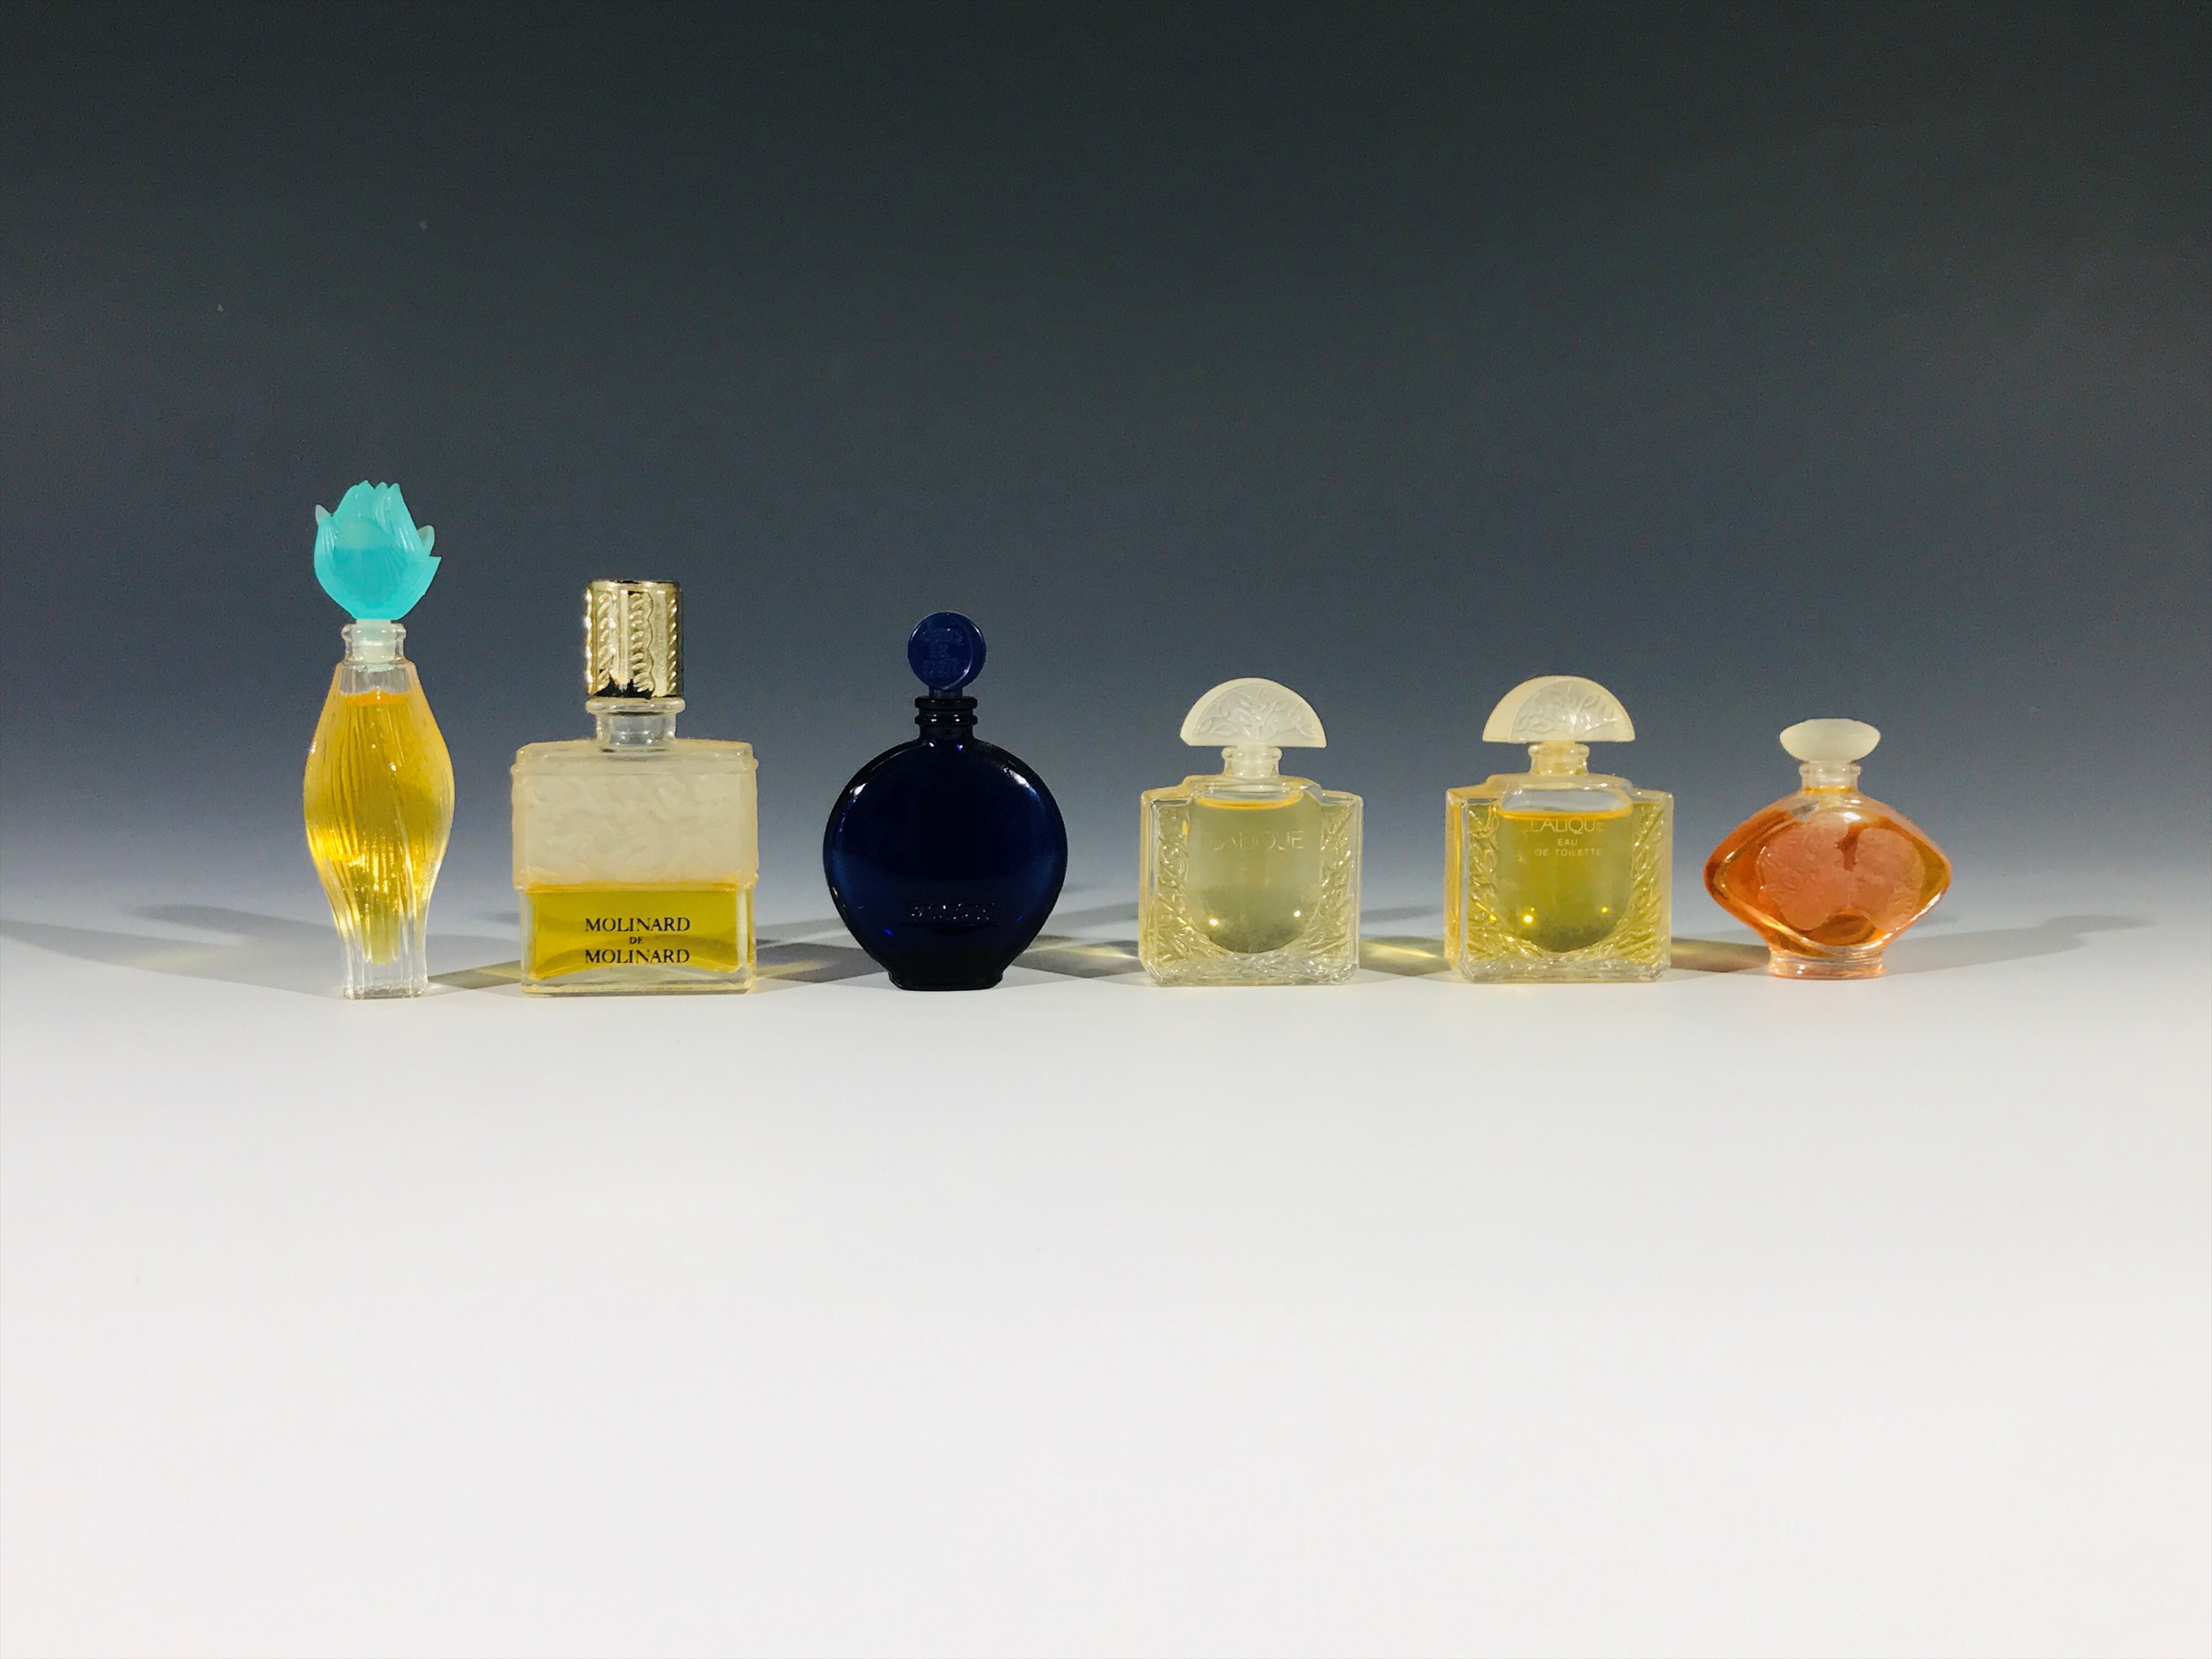 A Lalique for Worth 'Sans La Nuit' miniature perfume bottle, a Lalique for Molinard miniature